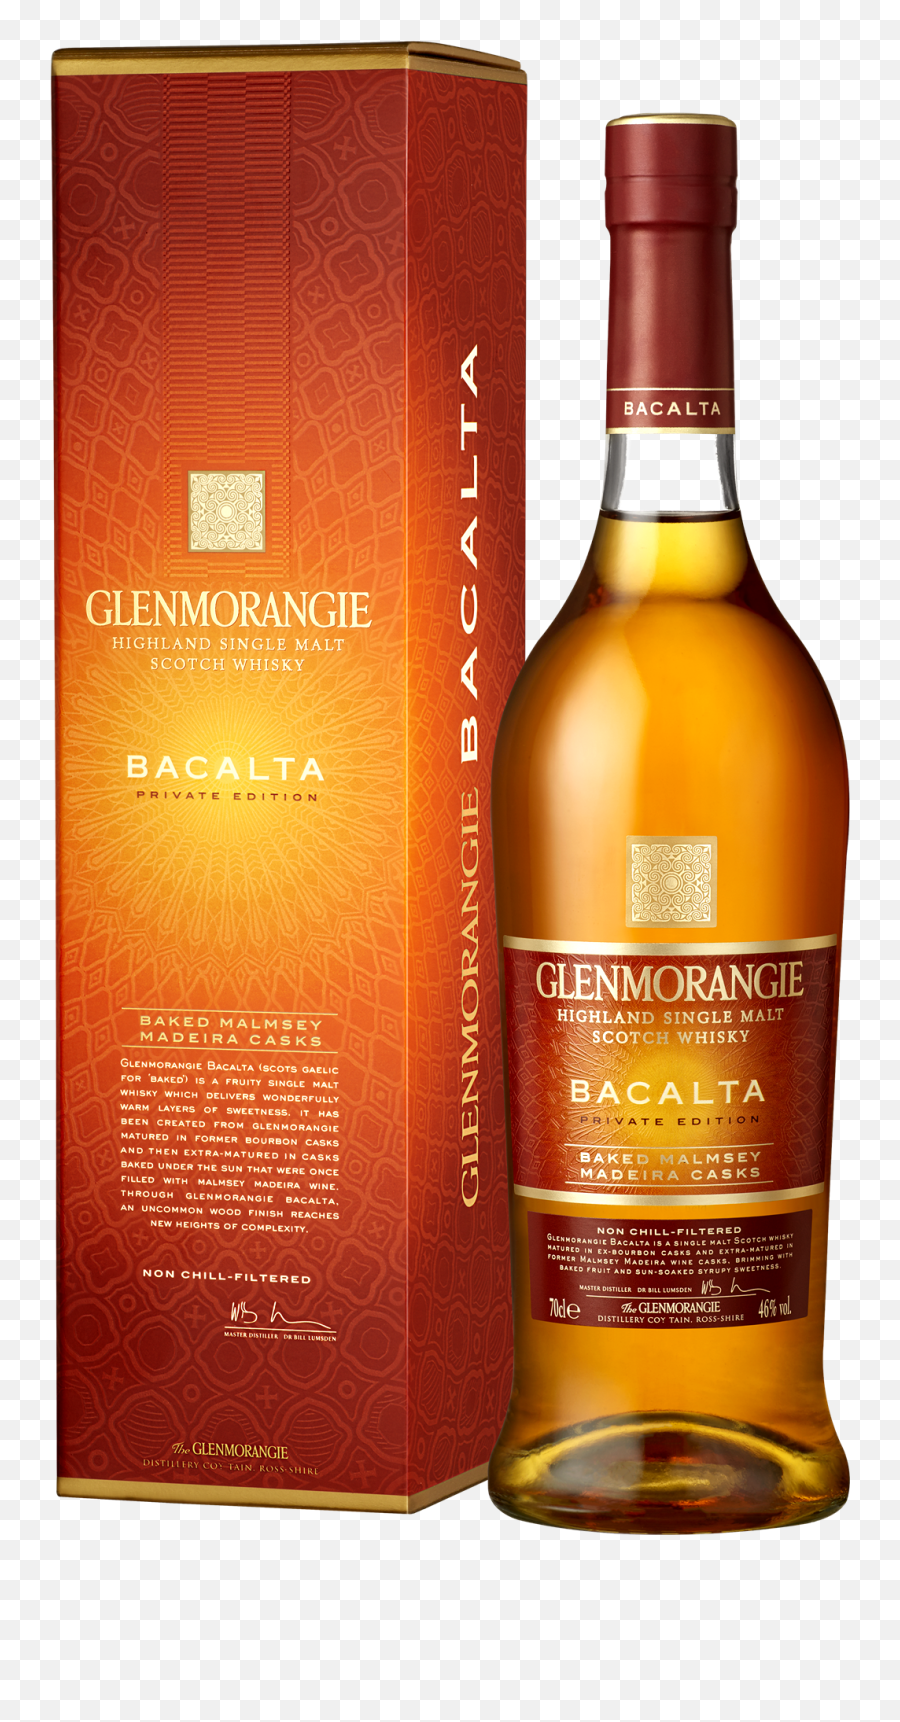 Glenmorangie Bacalta - Packshot Transparent Background Uppre Blended Whiskey Png,Bottle Transparent Background